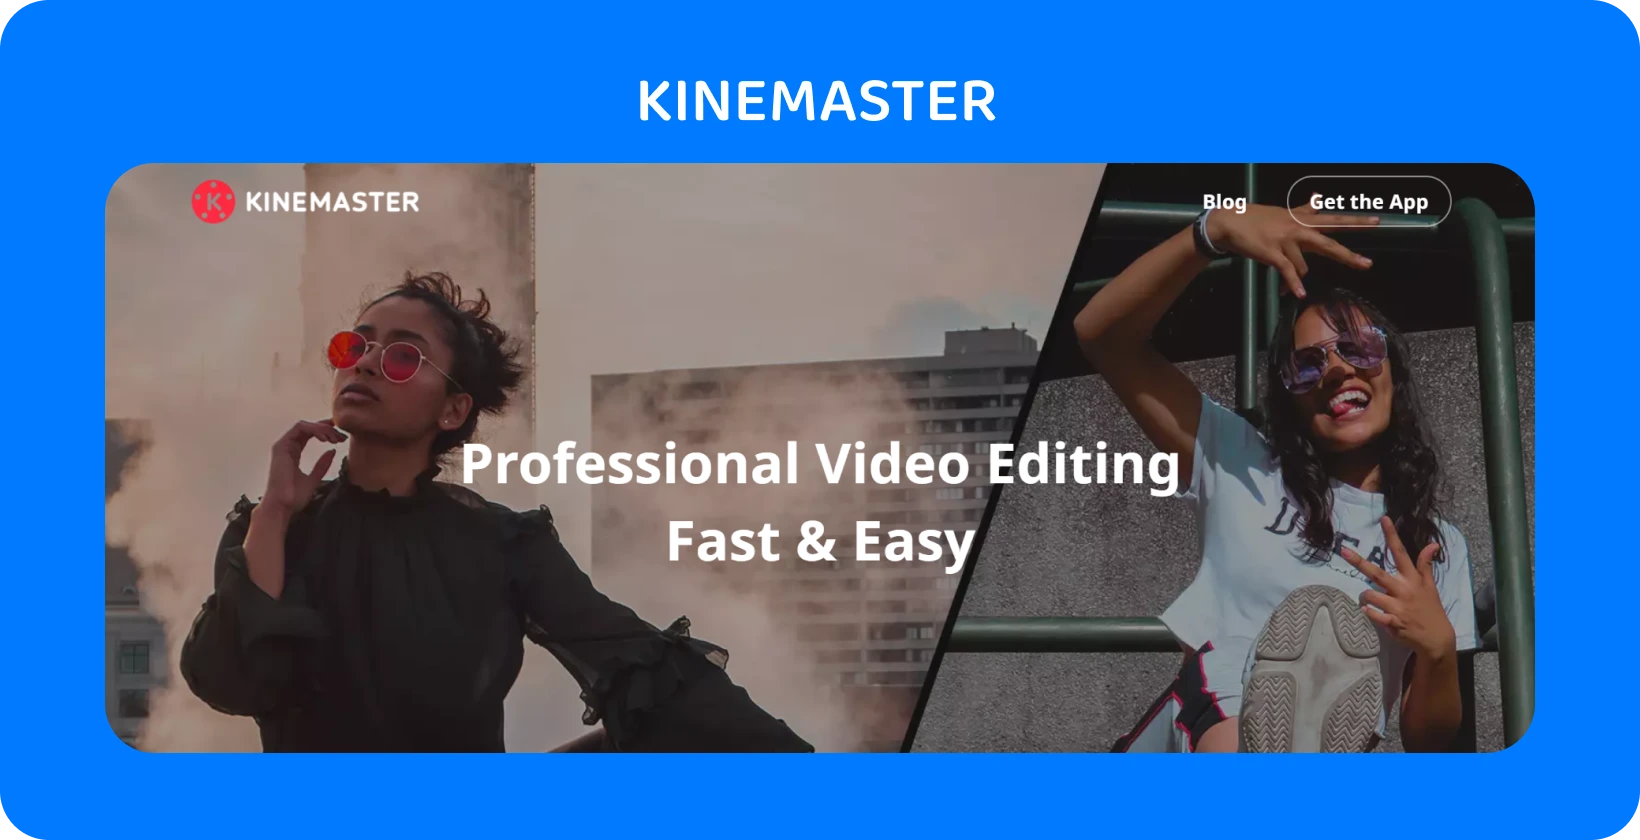 KineMaster lietotņu reklāmu ar diviem modeļiem, kas pozē, izceļot profesionālu video rediģēšanu, kas ir ātra un vienkārša.